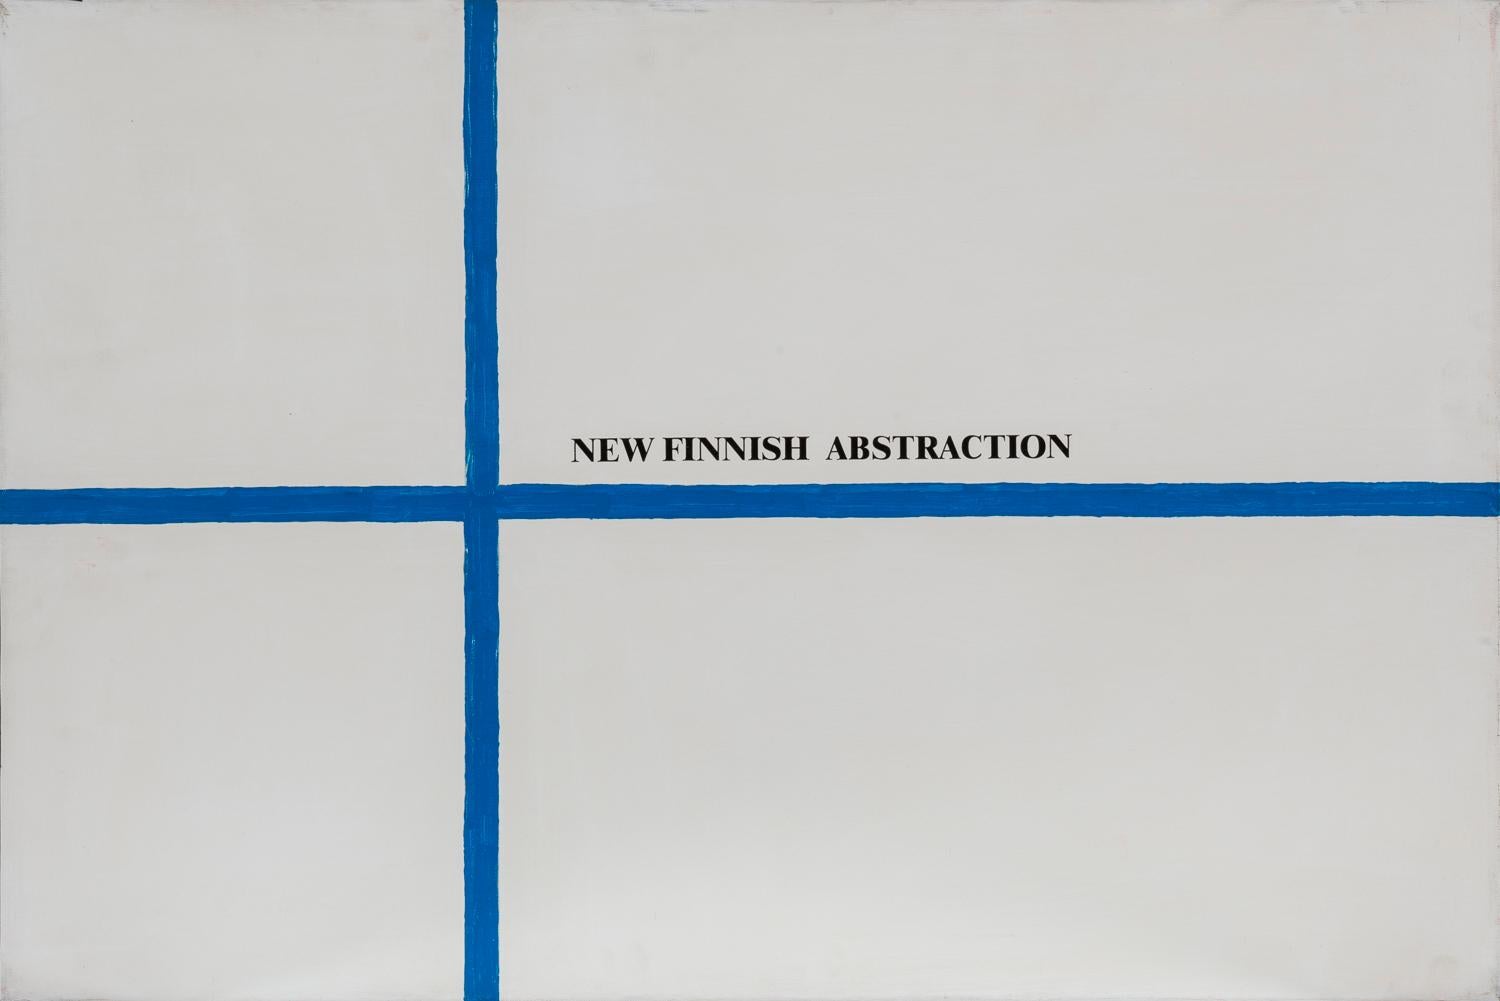 Sarenco Abstract Painting – Neue finnische Abstraktion, 1972-2002, Acryl auf Leinwand, Flaggen, Visuelle Poesie